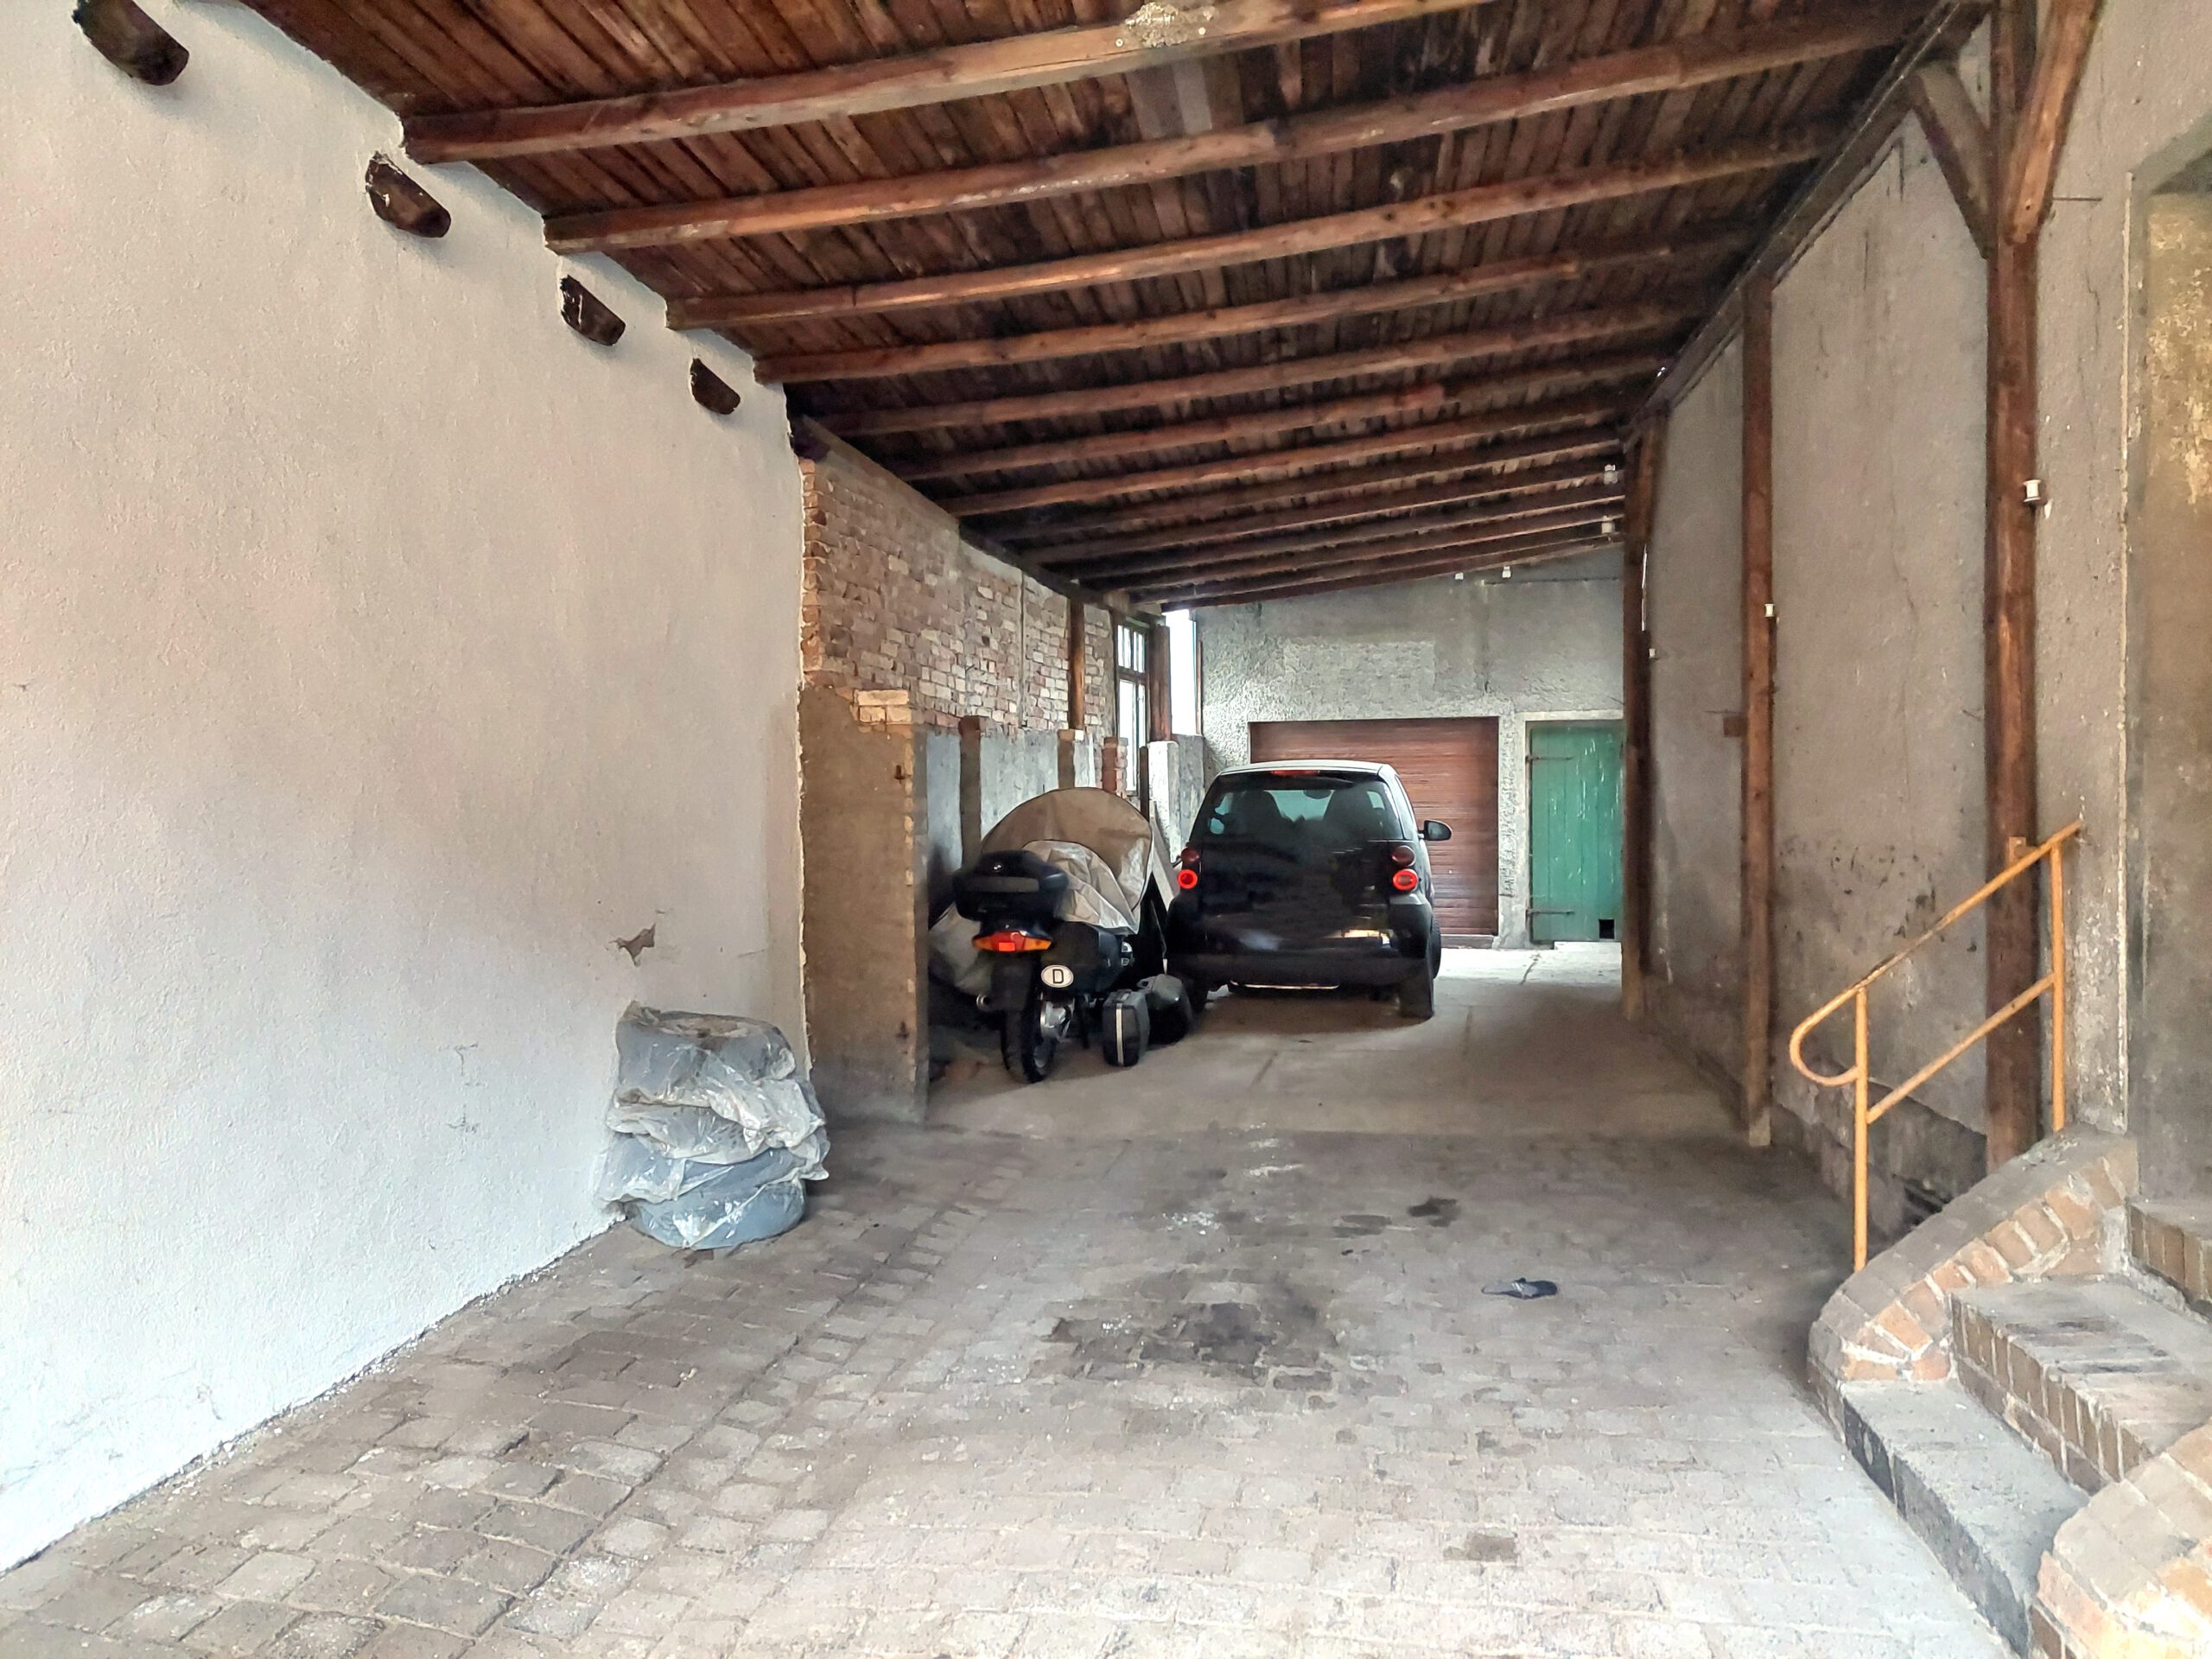 Einfamilienhaus in Hergisdorf - überdachte Einfahrt zur Garage